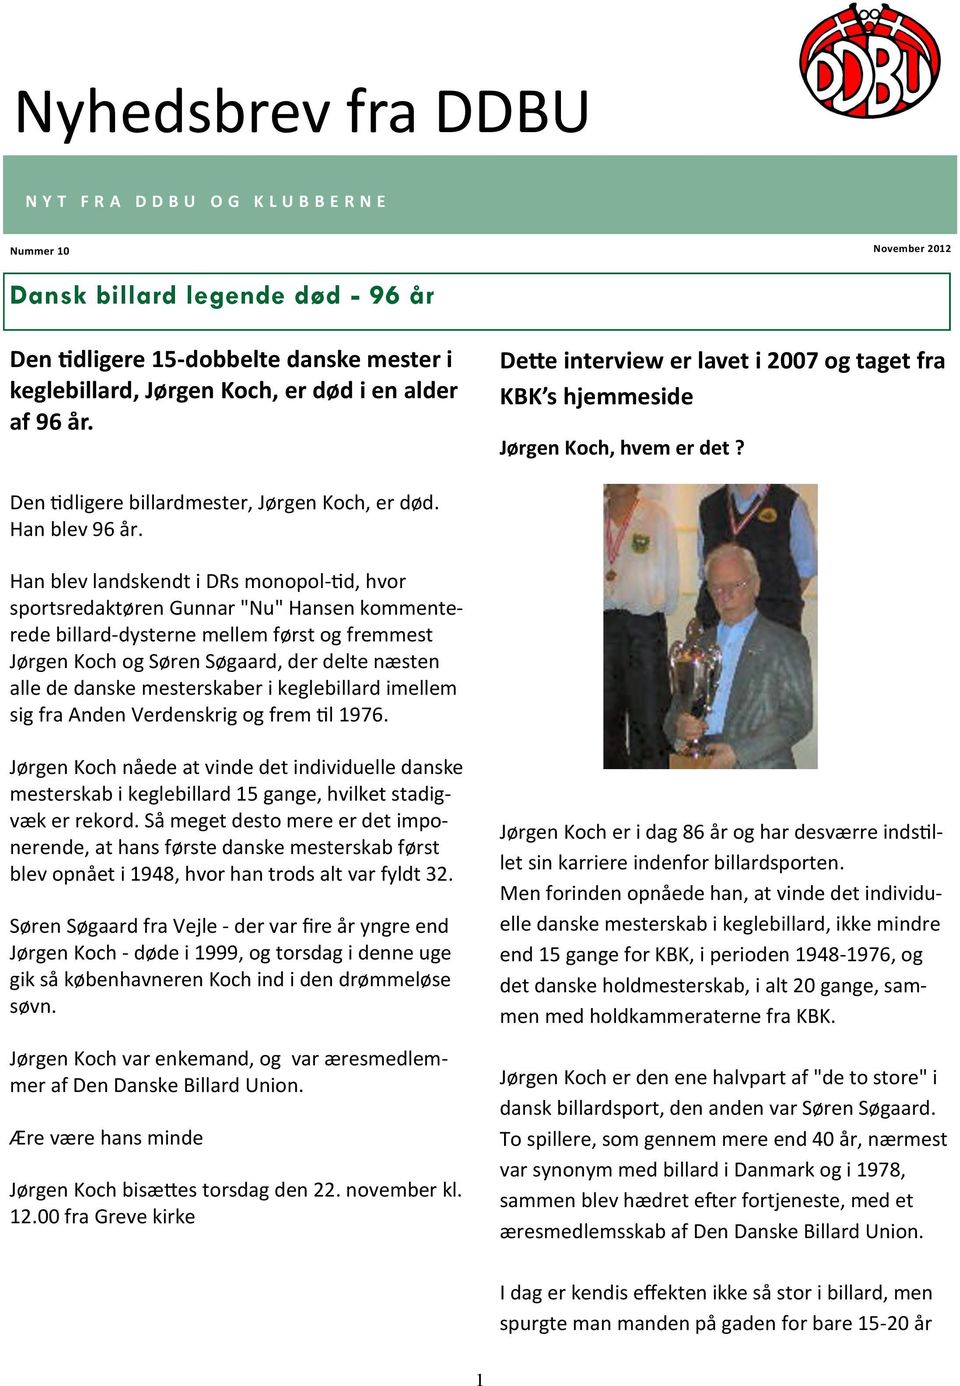 Nyhedsbrev fra DDBU. Dansk billard legende død - 96 år - PDF Gratis download